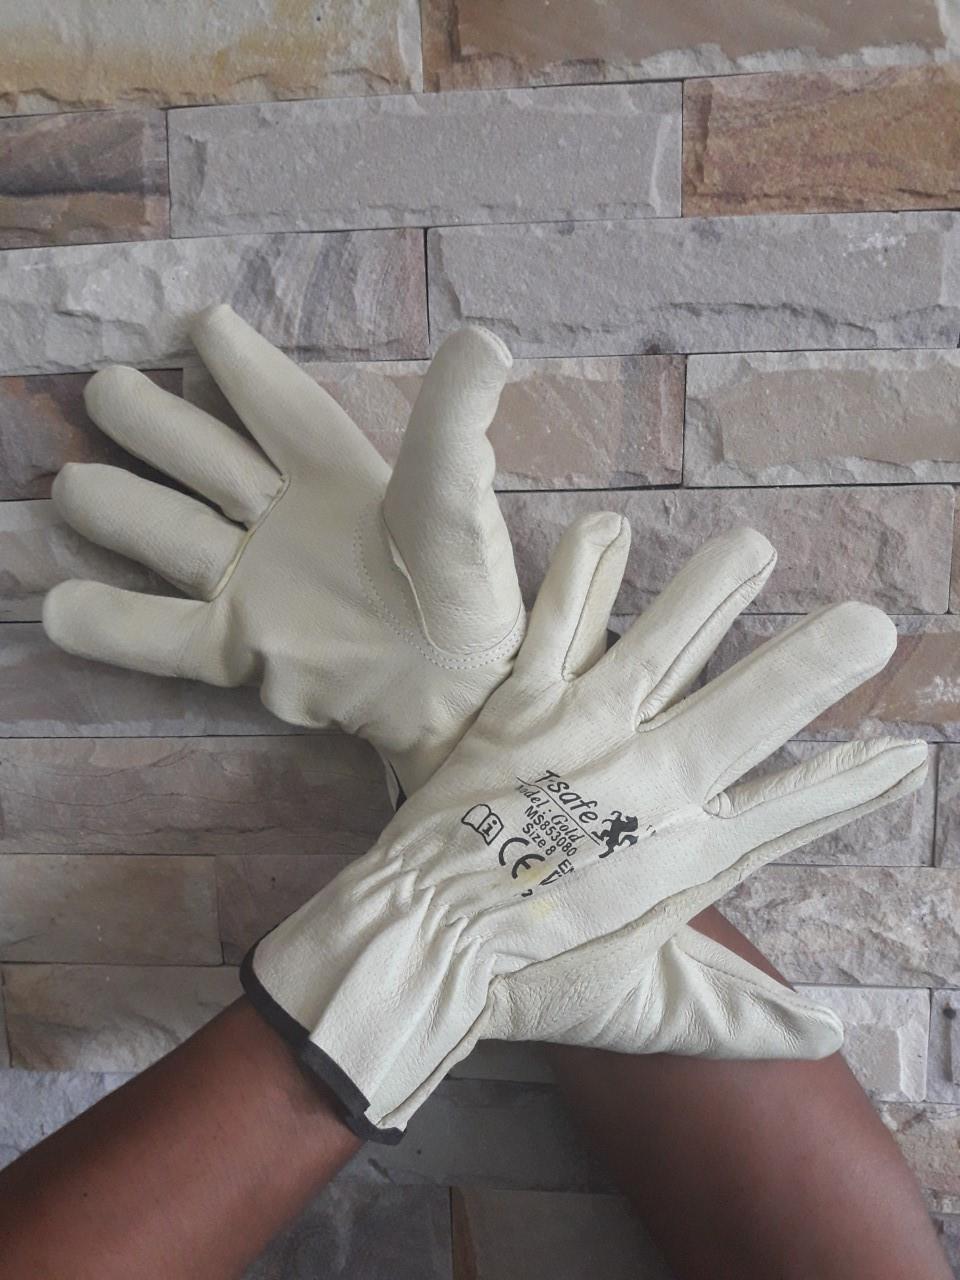 ถุงมือหนังผิว สำหรับงานเชื่อม และงานทั่วไป ,ถุงมือเชื่อมอาร์กอน / ถุงมือหนังแพะ / ถุงมือหนังผิว / ถุงมืองานเชื่อม / T-Safe,T-Safe,Plant and Facility Equipment/Safety Equipment/Gloves & Hand Protection